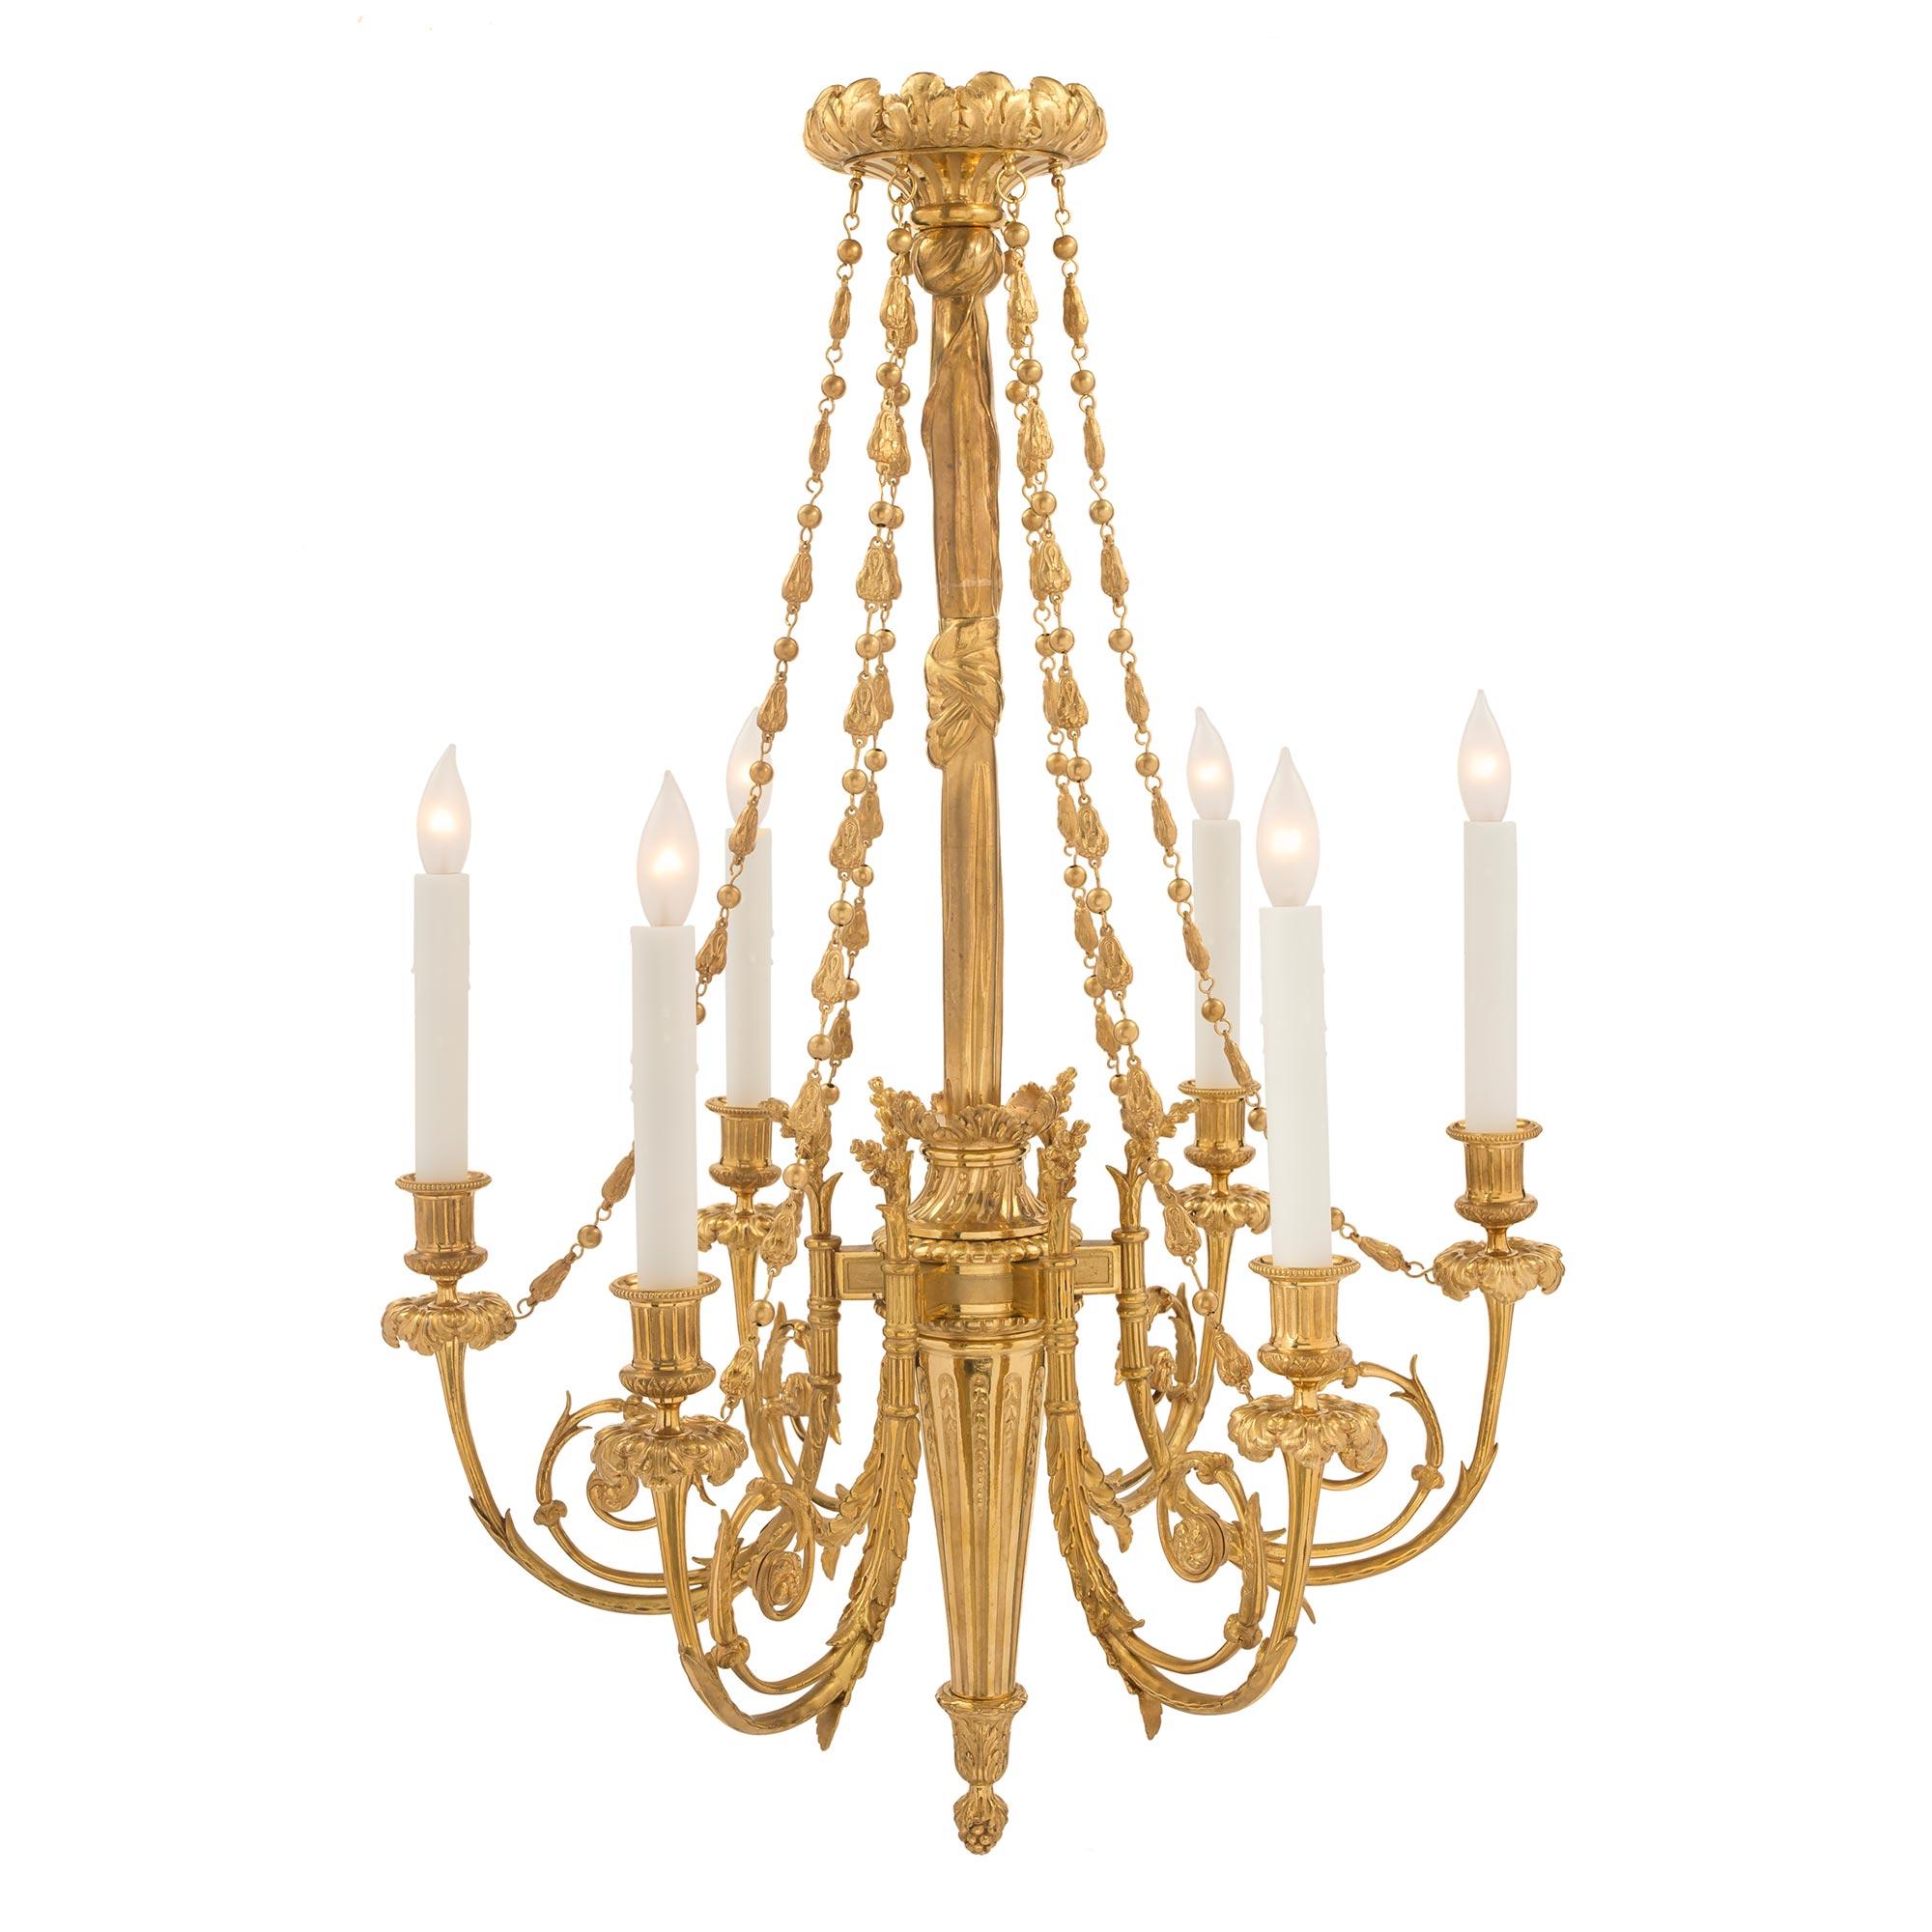 Un lustre à six bras de lumière en bronze doré de style Louis XVI du 19ème siècle, extrêmement élégant. Le lustre est centré par un fin gland inversé inférieur sous le support cannelé effilé. Chaque bras présente une belle forme Rinceau à volutes